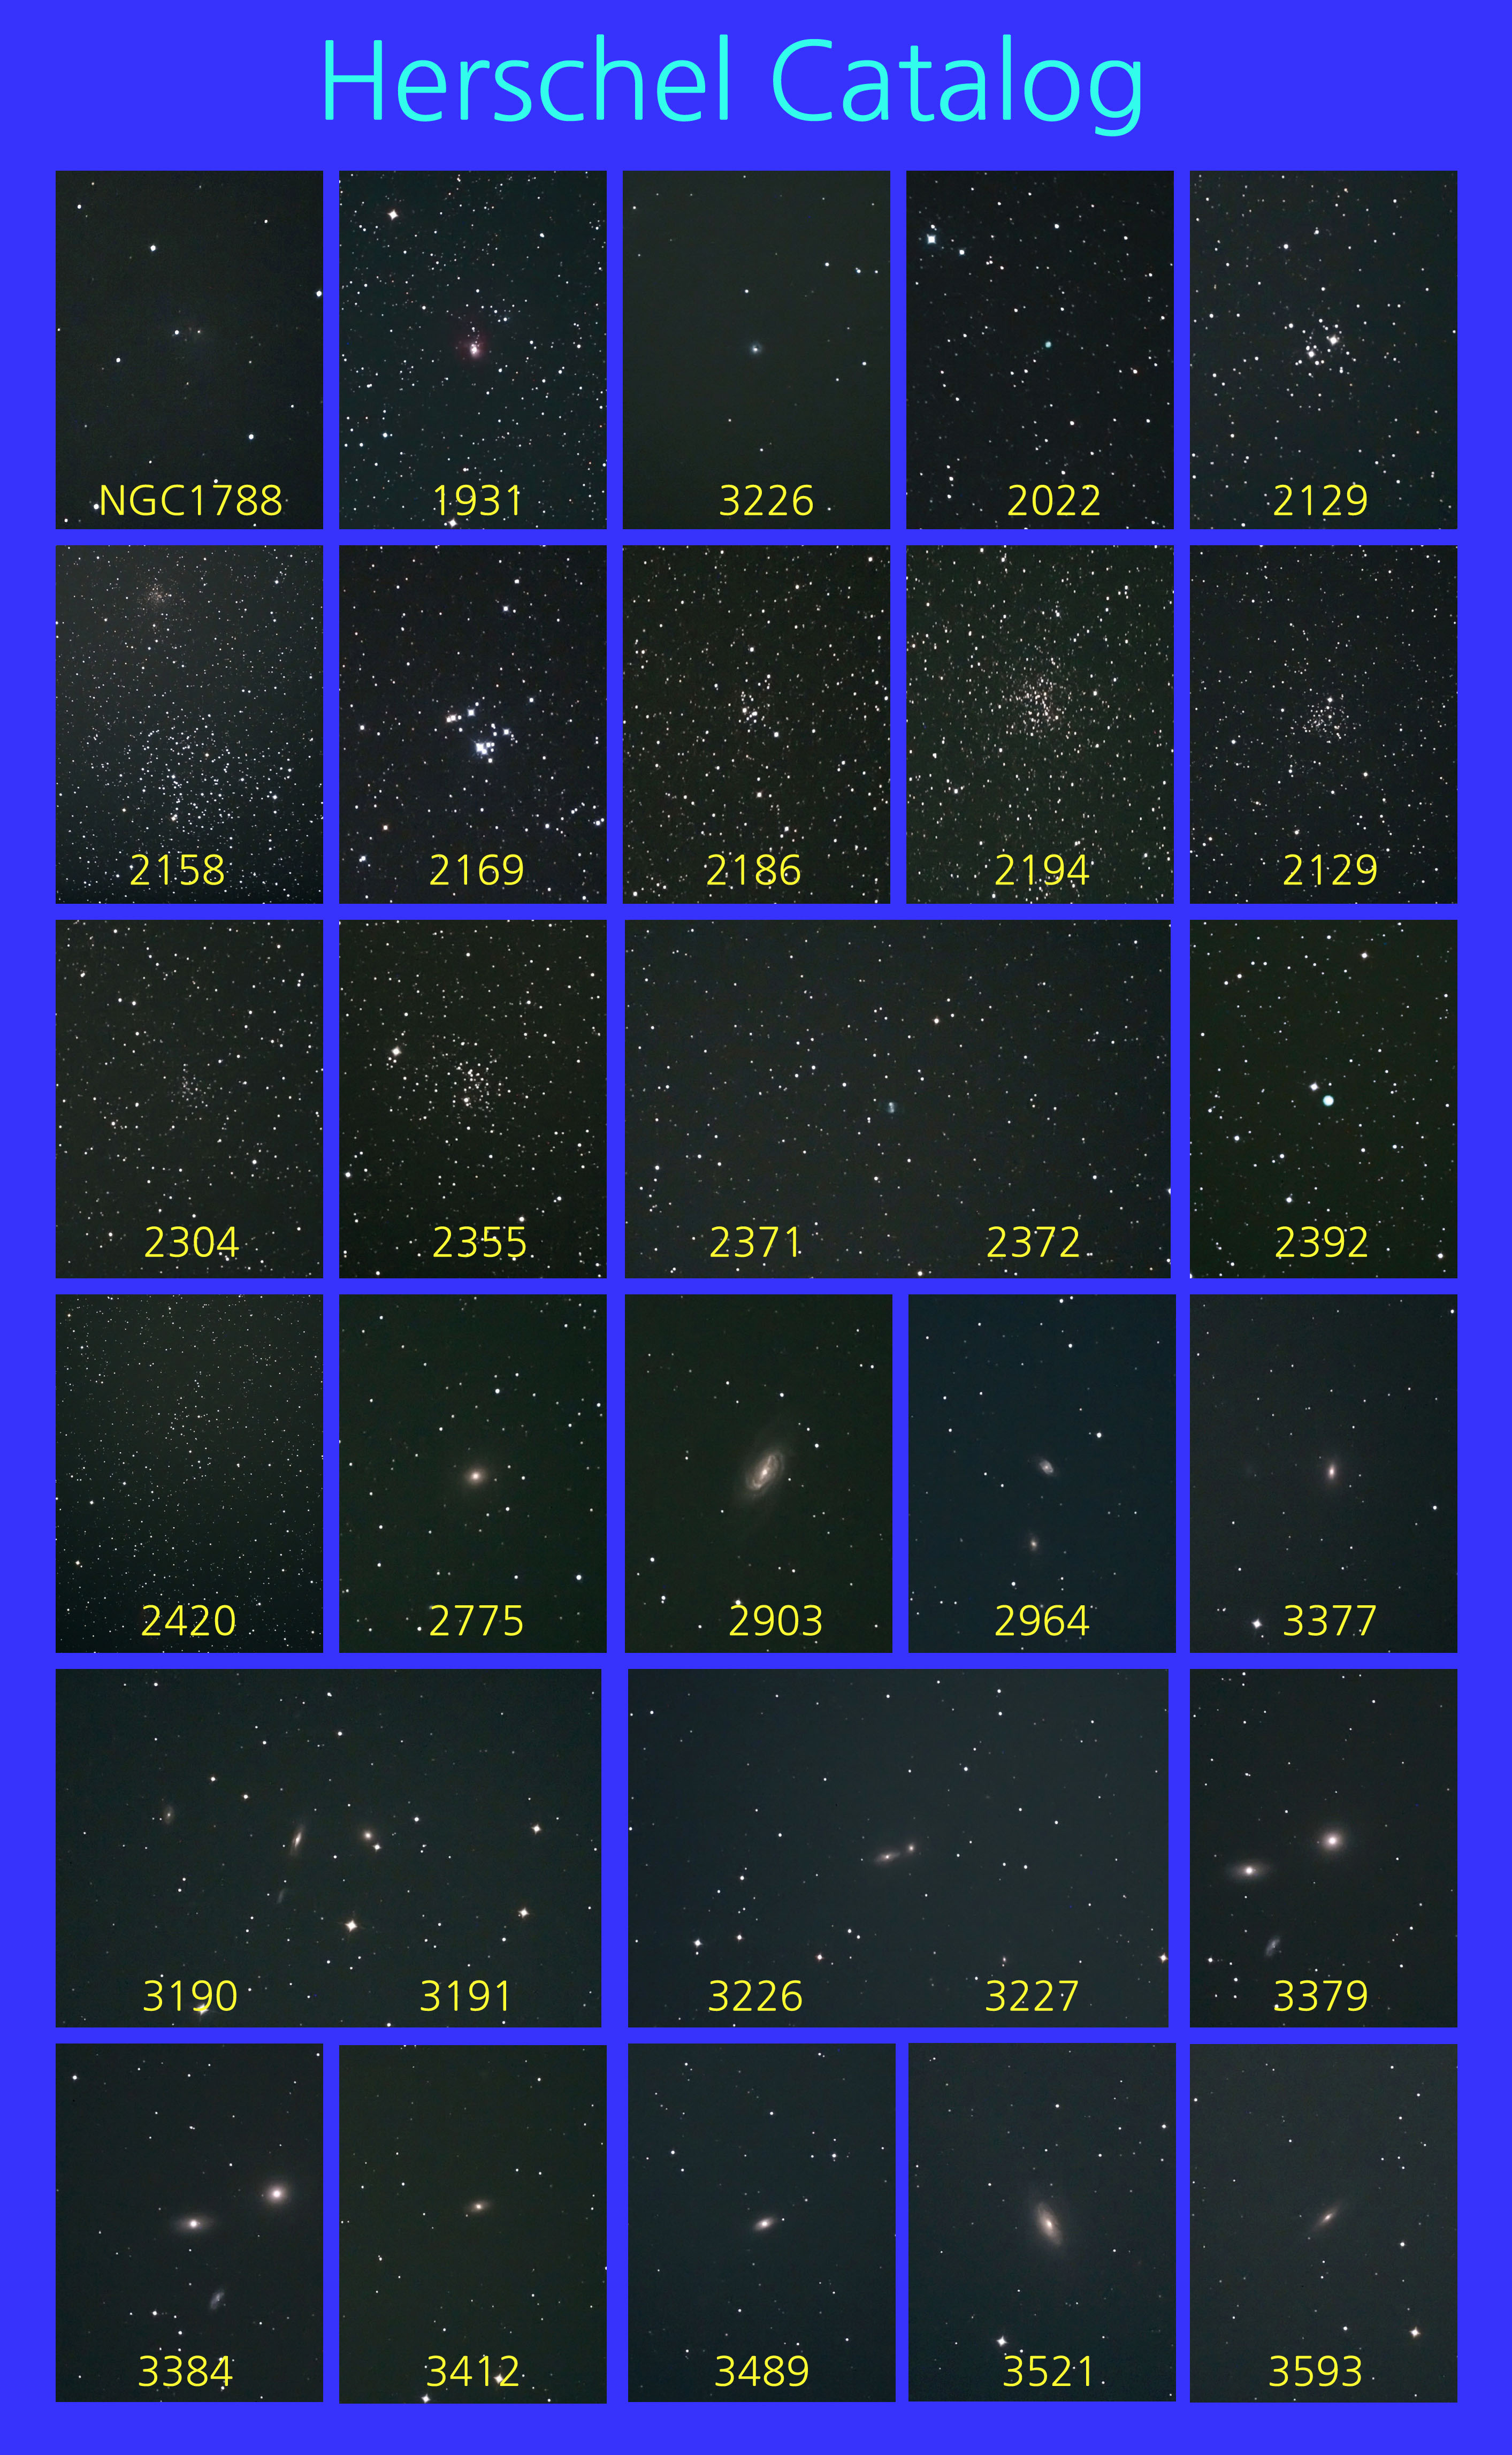 Herschel-150321-1.jpg